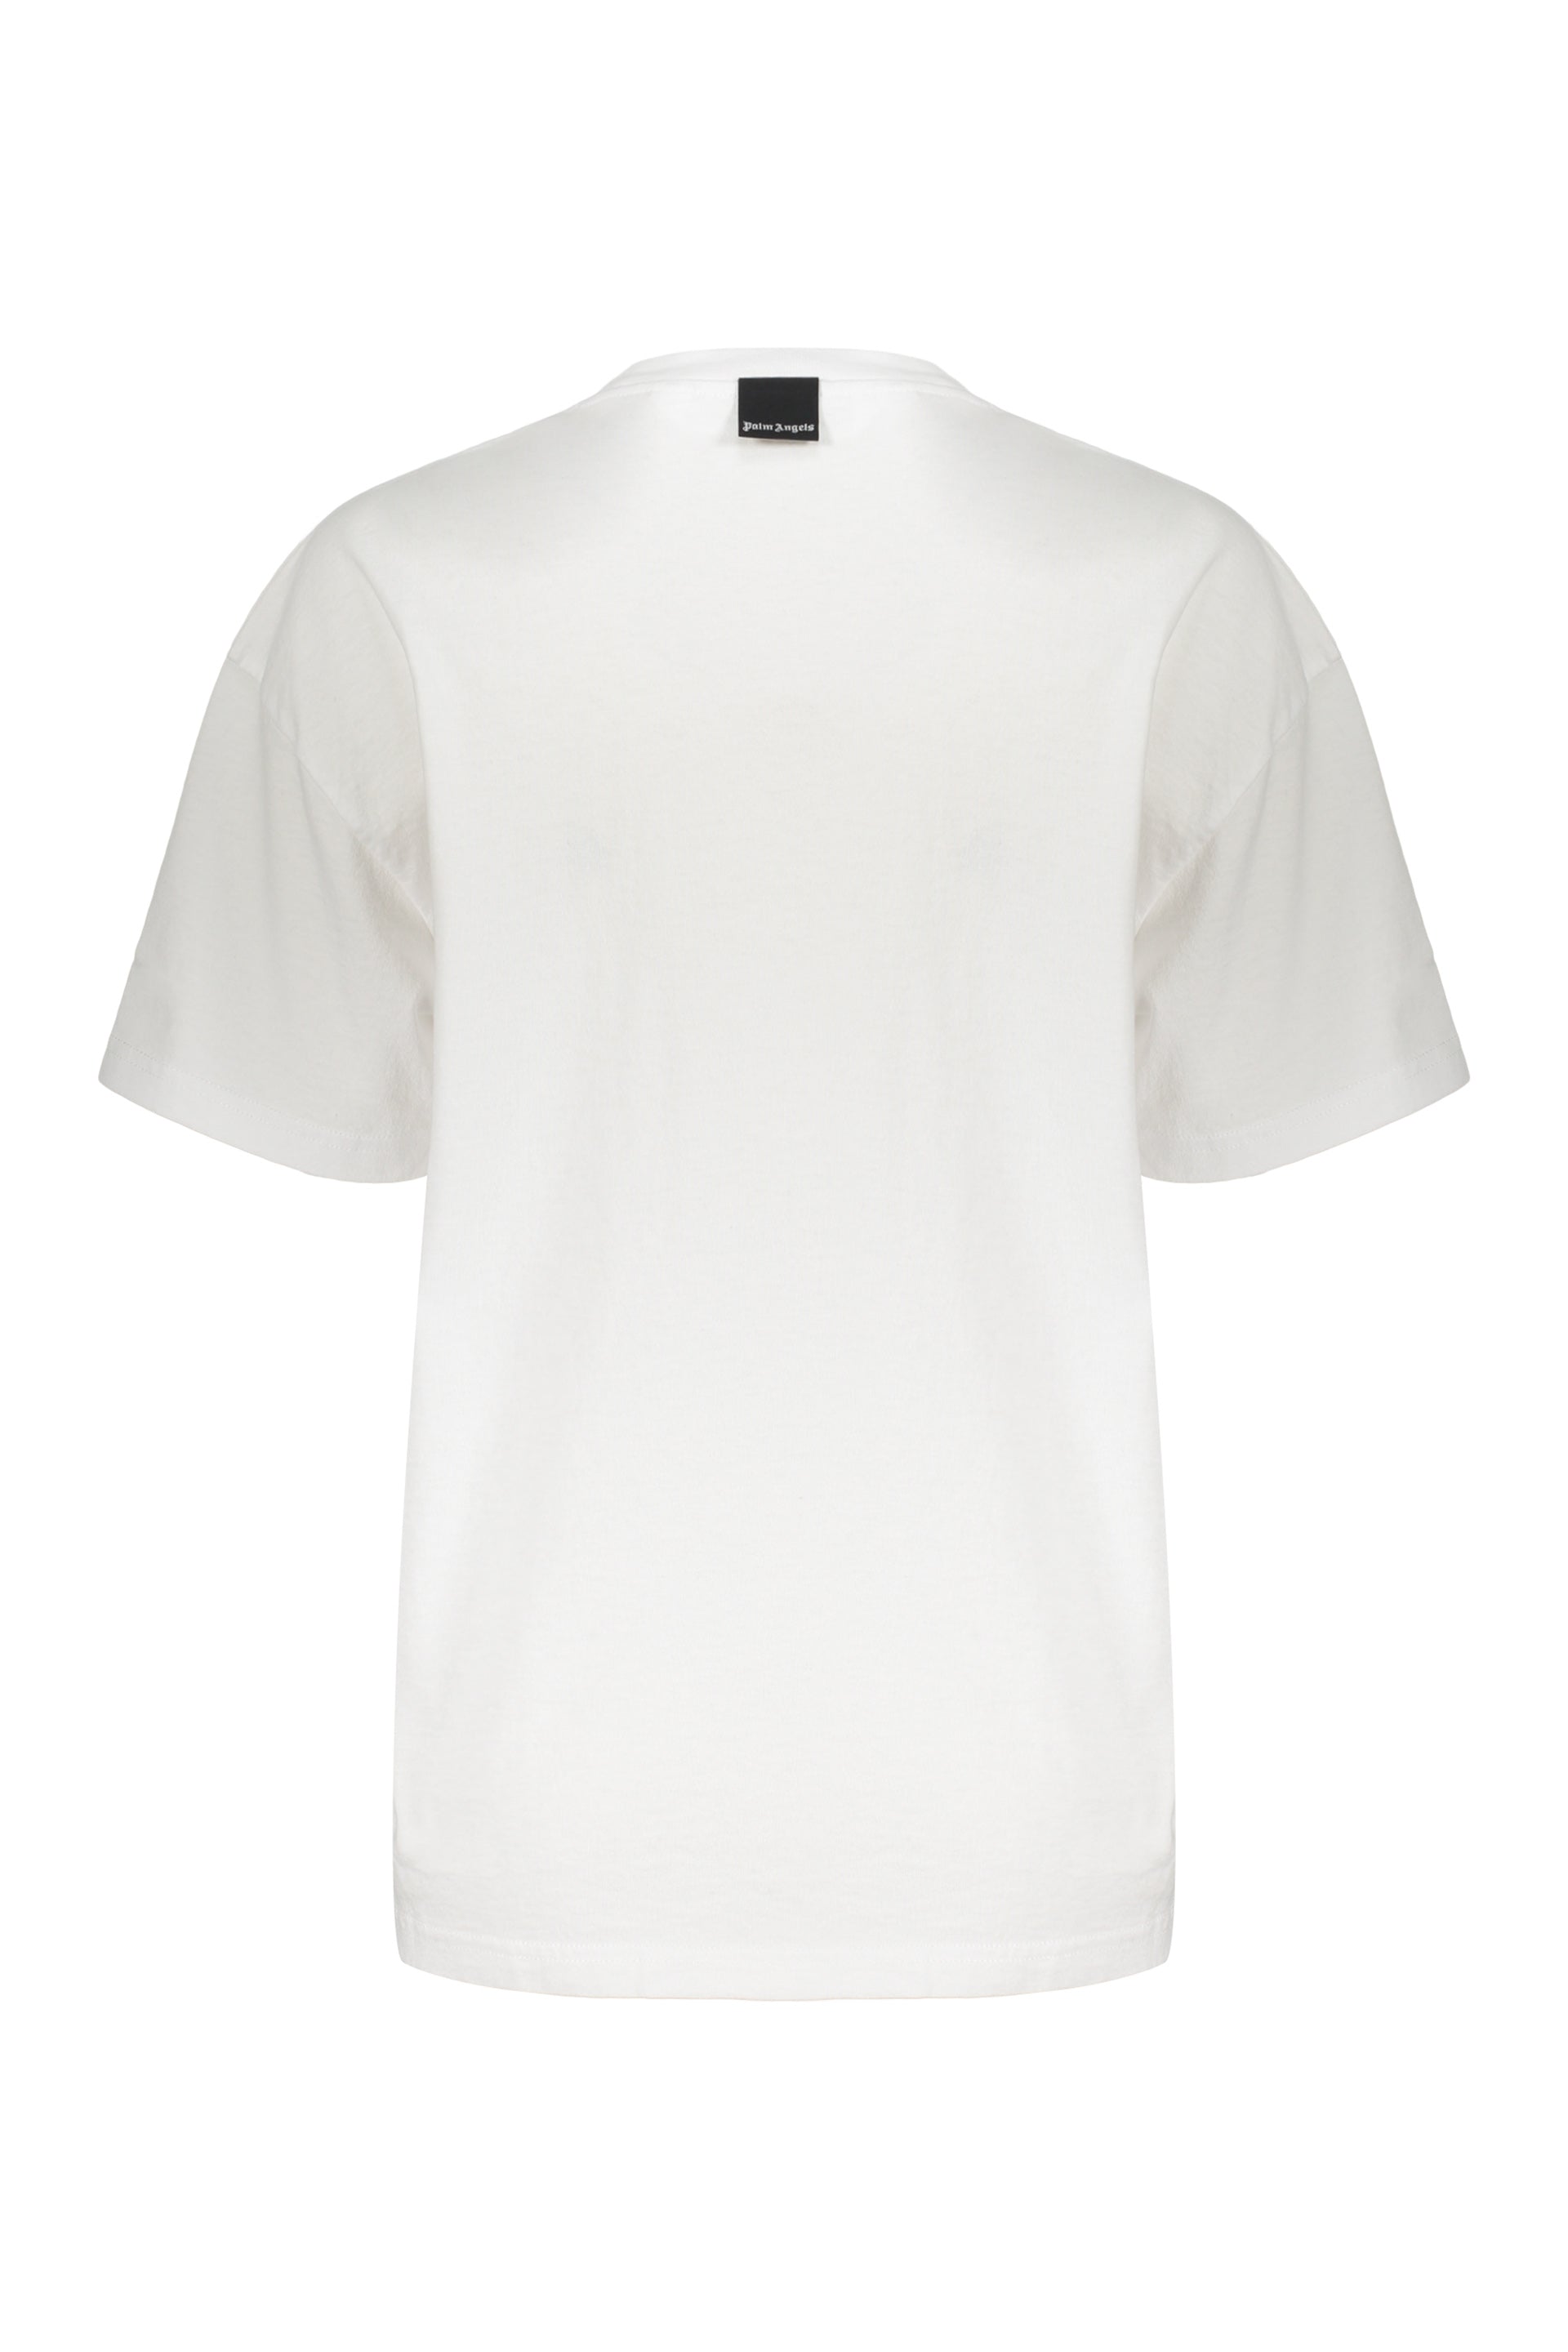 Palm-Angels-OUTLET-SALE-Cotton-T-shirt-Shirts-XS-ARCHIVE-COLLECTION-2_39c178f6-7af7-47f2-b03b-7c27d071de78.jpg